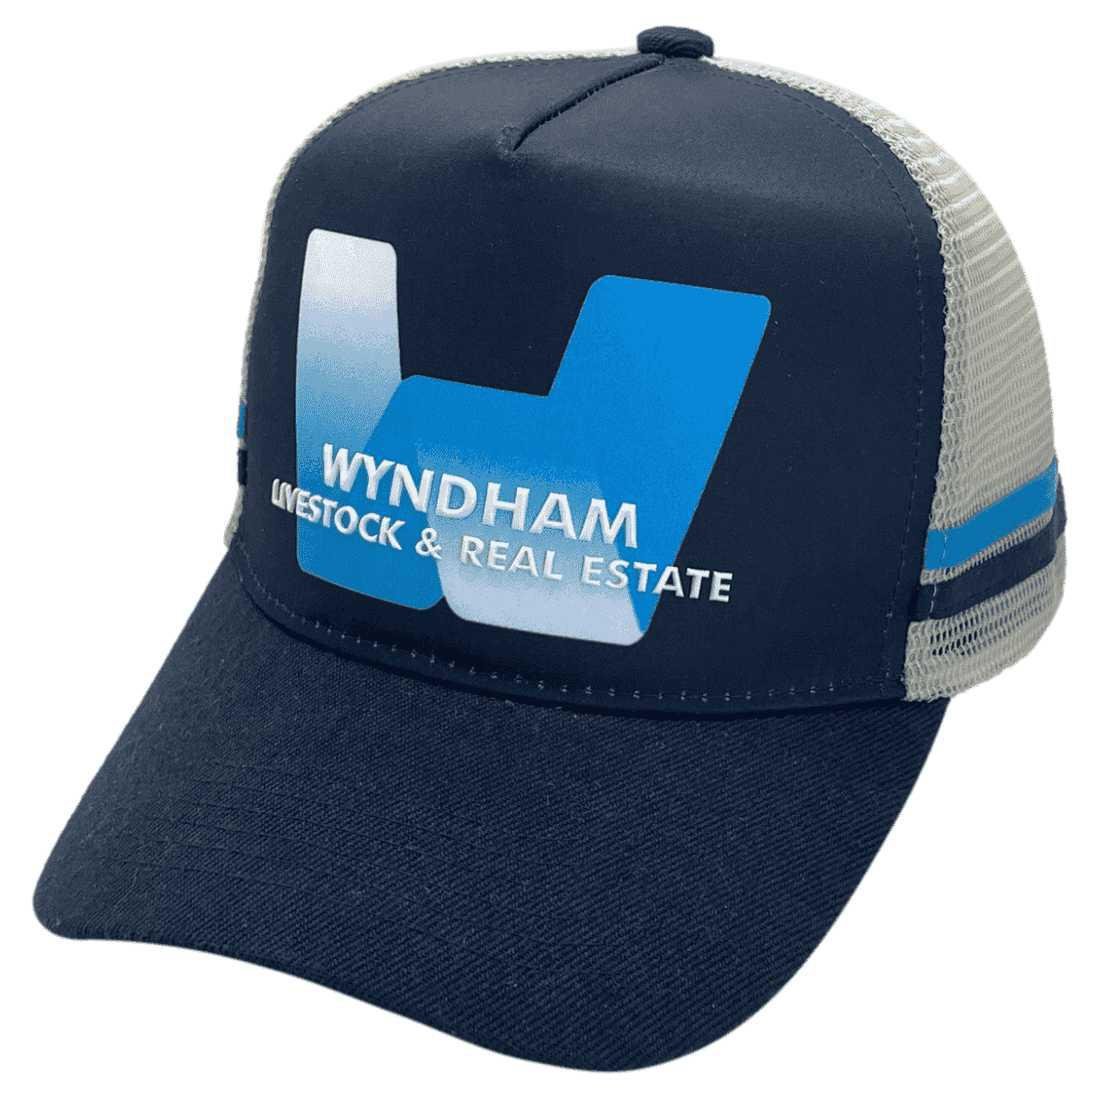 Wyndham Livestock & Real Estate HP Midrange Aussie Trucker Hat Acrylic